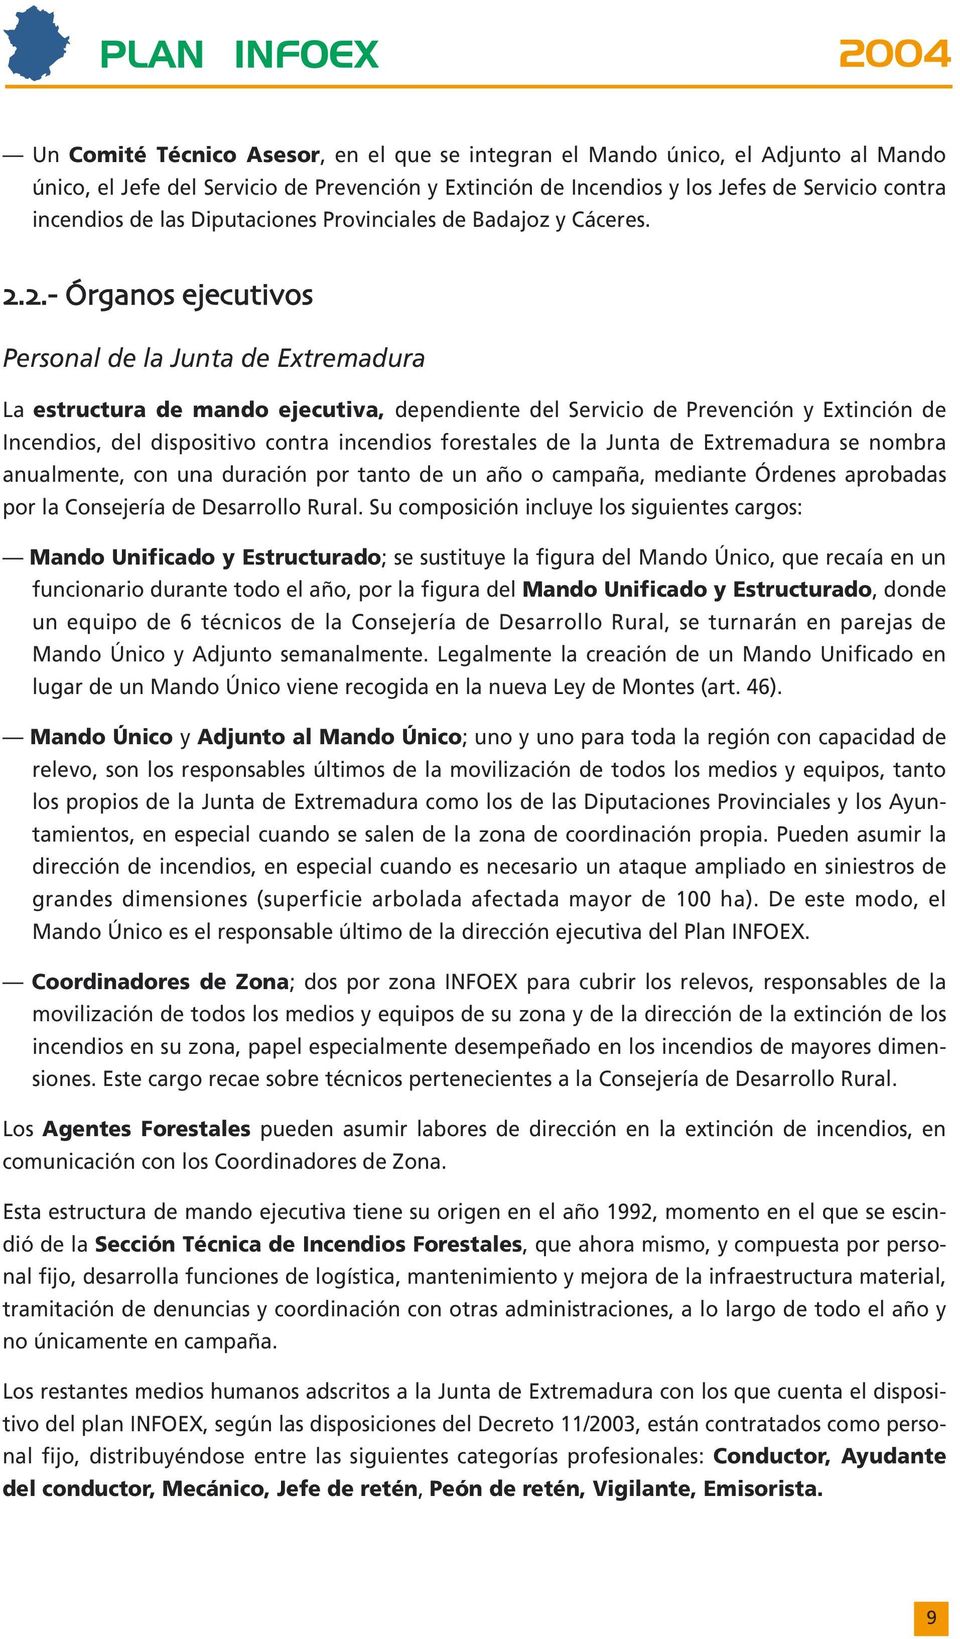 ..- Órganos ejecutivos Personal de la Junta de Extremadura La estructura de mando ejecutiva, dependiente del Servicio de Prevención y Extinción de Incendios, del dispositivo contra incendios